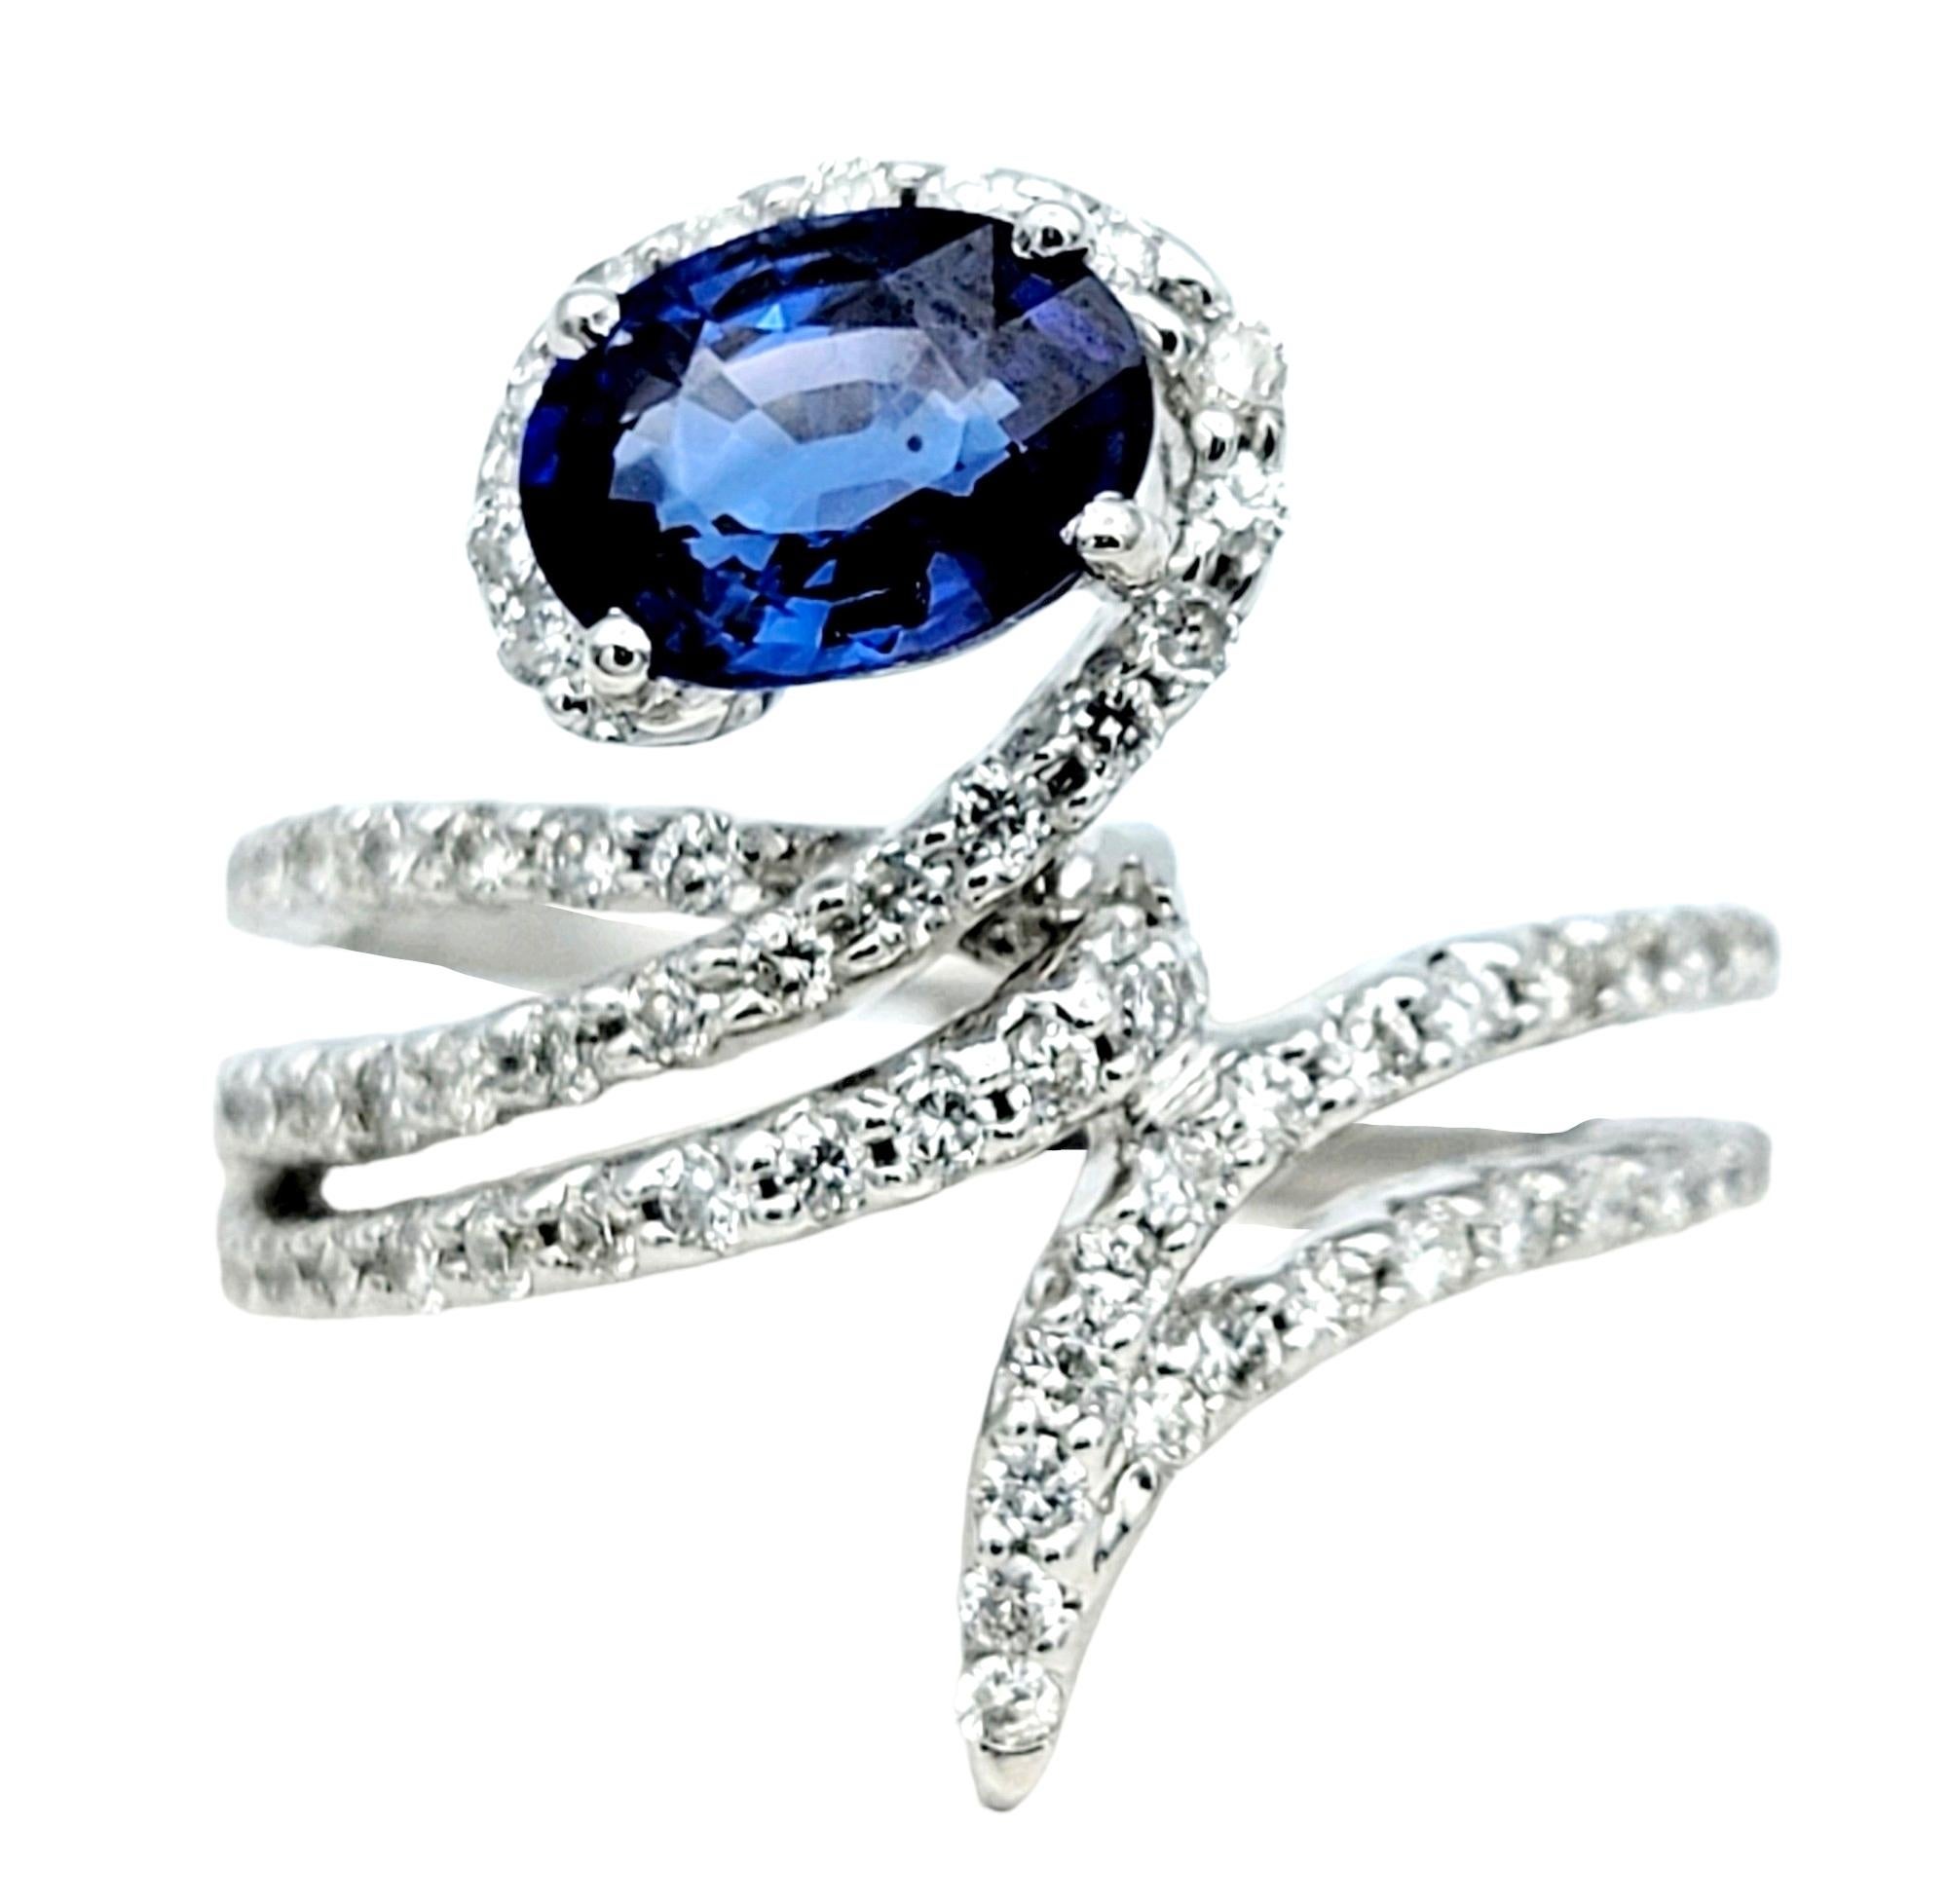 Ringgröße: 6.25

Unser exquisiter zeitgenössischer Saphir- und Diamant-Bypass-Ring ist eine wahre Verkörperung von Eleganz und moderner Anziehungskraft. Dieser Ring aus glänzendem 18-karätigem Weißgold verbindet Raffinesse mit einem Hauch von